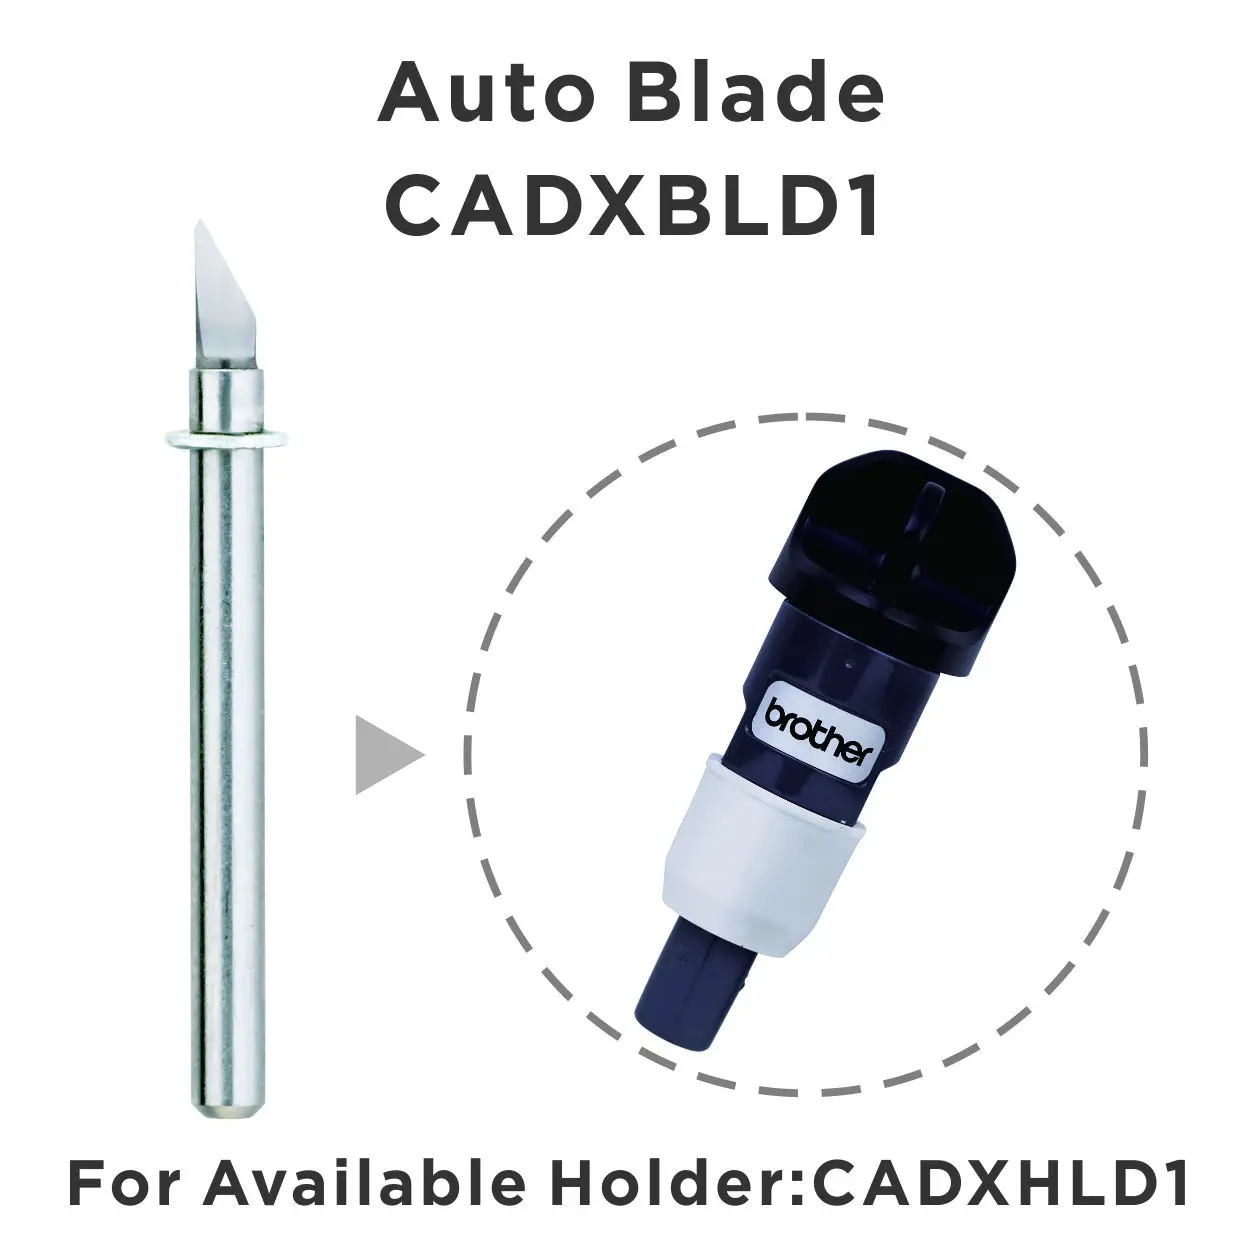 Paquete de 2 cuchillas para coche, accesorio de repuesto CADXBLD1 para Brother ScanNCut DX, materiales de corte de 0,1-3mm de grosor, incluyendo tela, fieltro, V